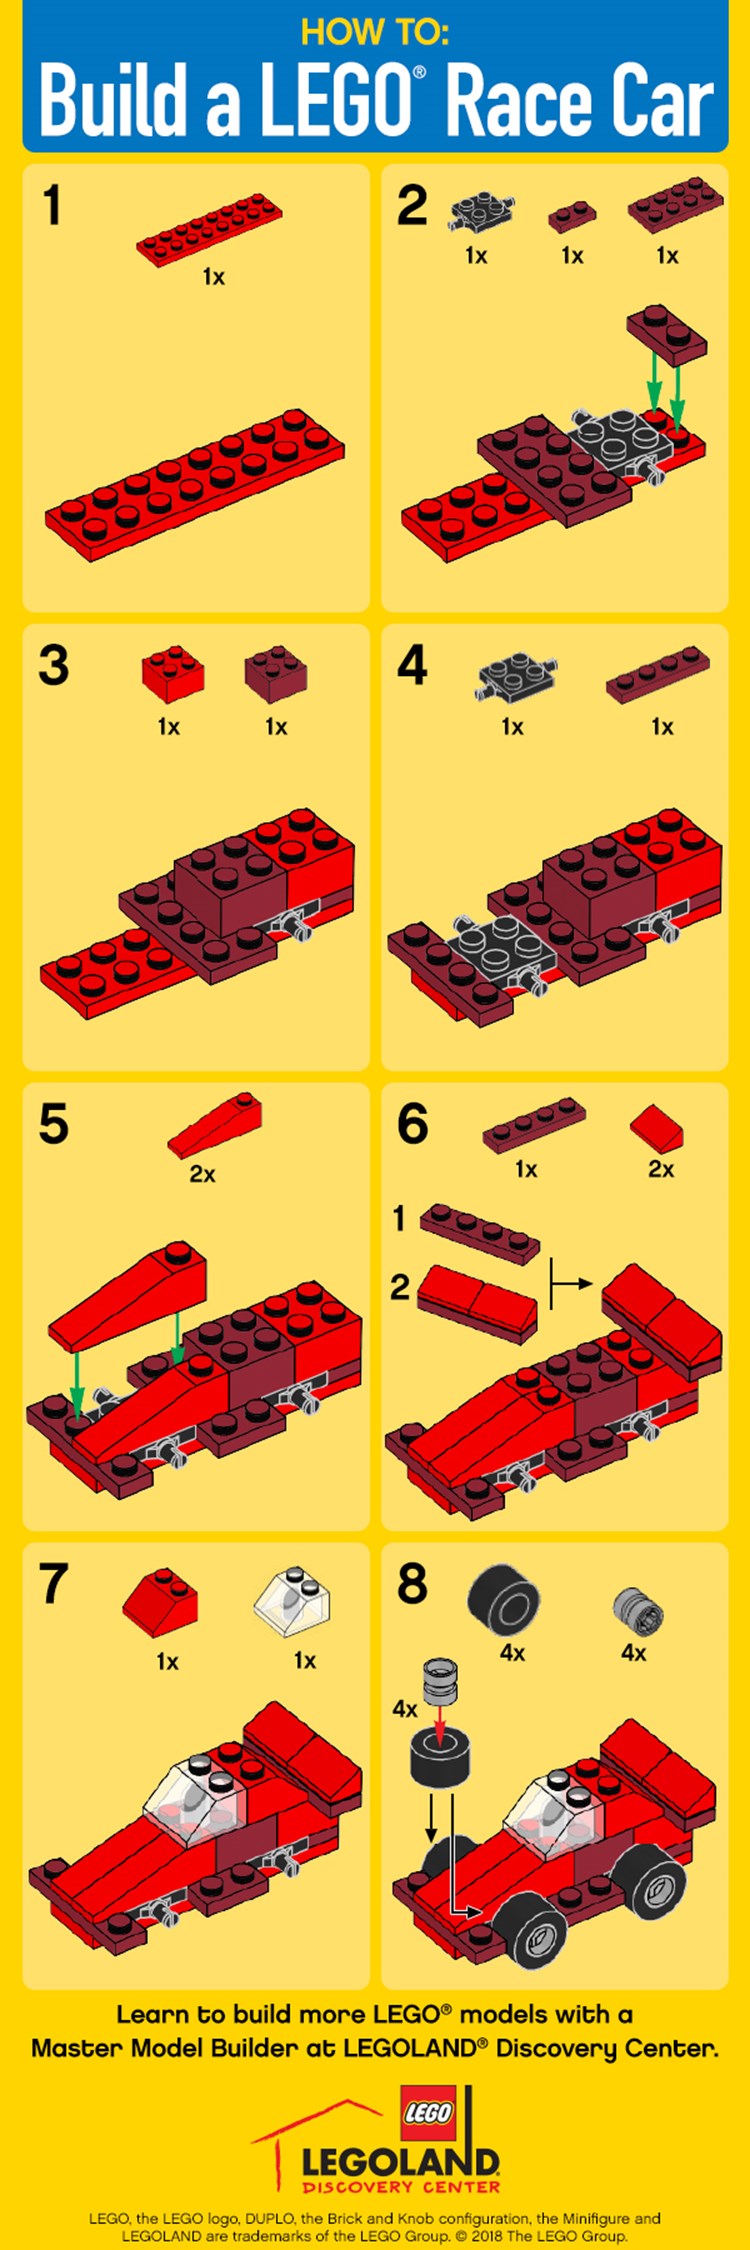 How to Build a LEGO Race Car | LEGOLAND Discovery Center